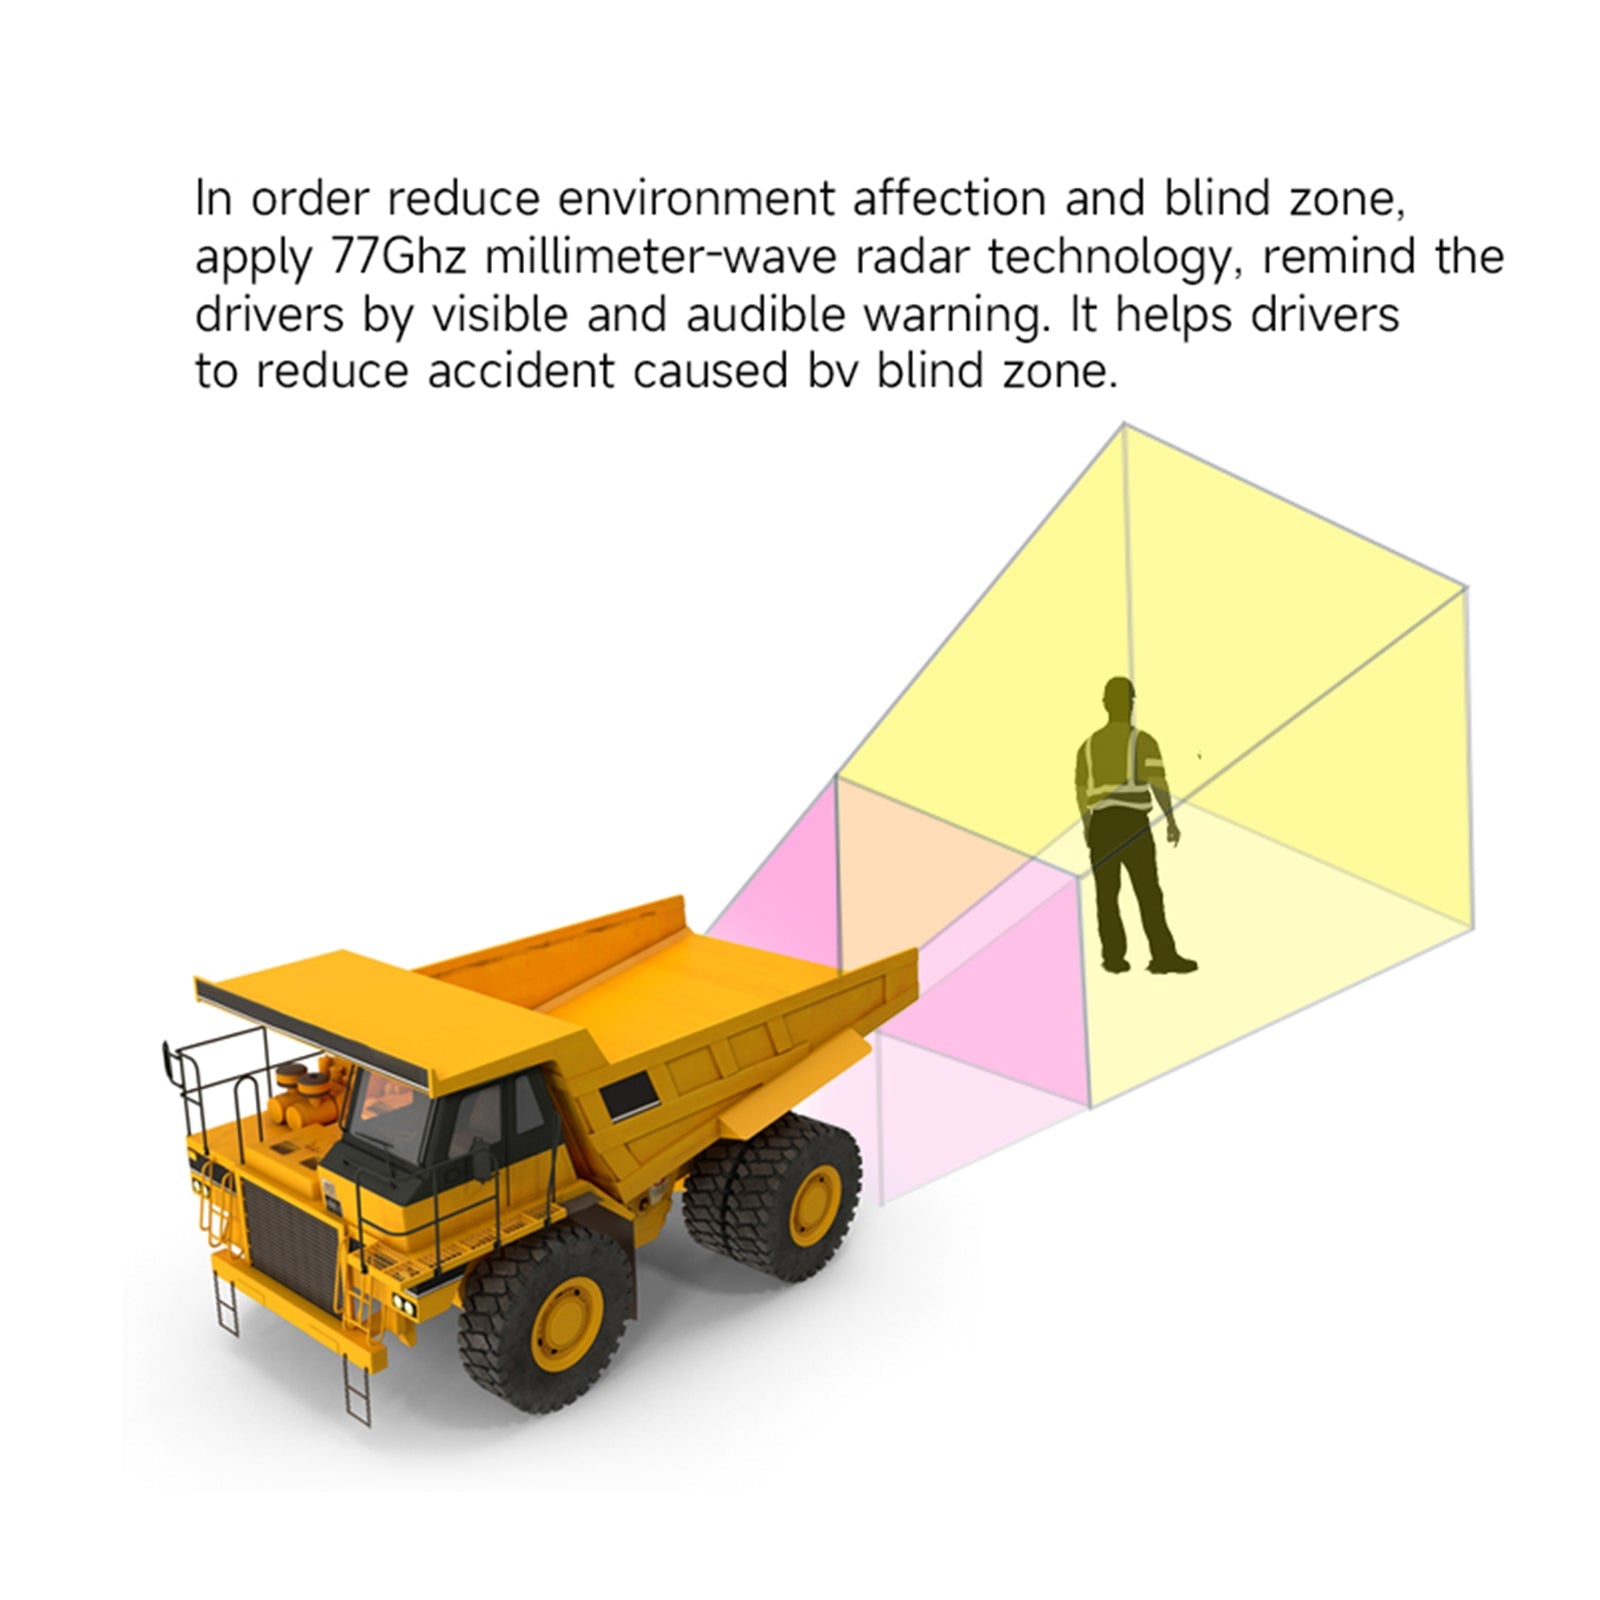 Sistema de advertencia para evitar obstáculos por radar de onda milimétrica de 77Ghz para camión de cemento